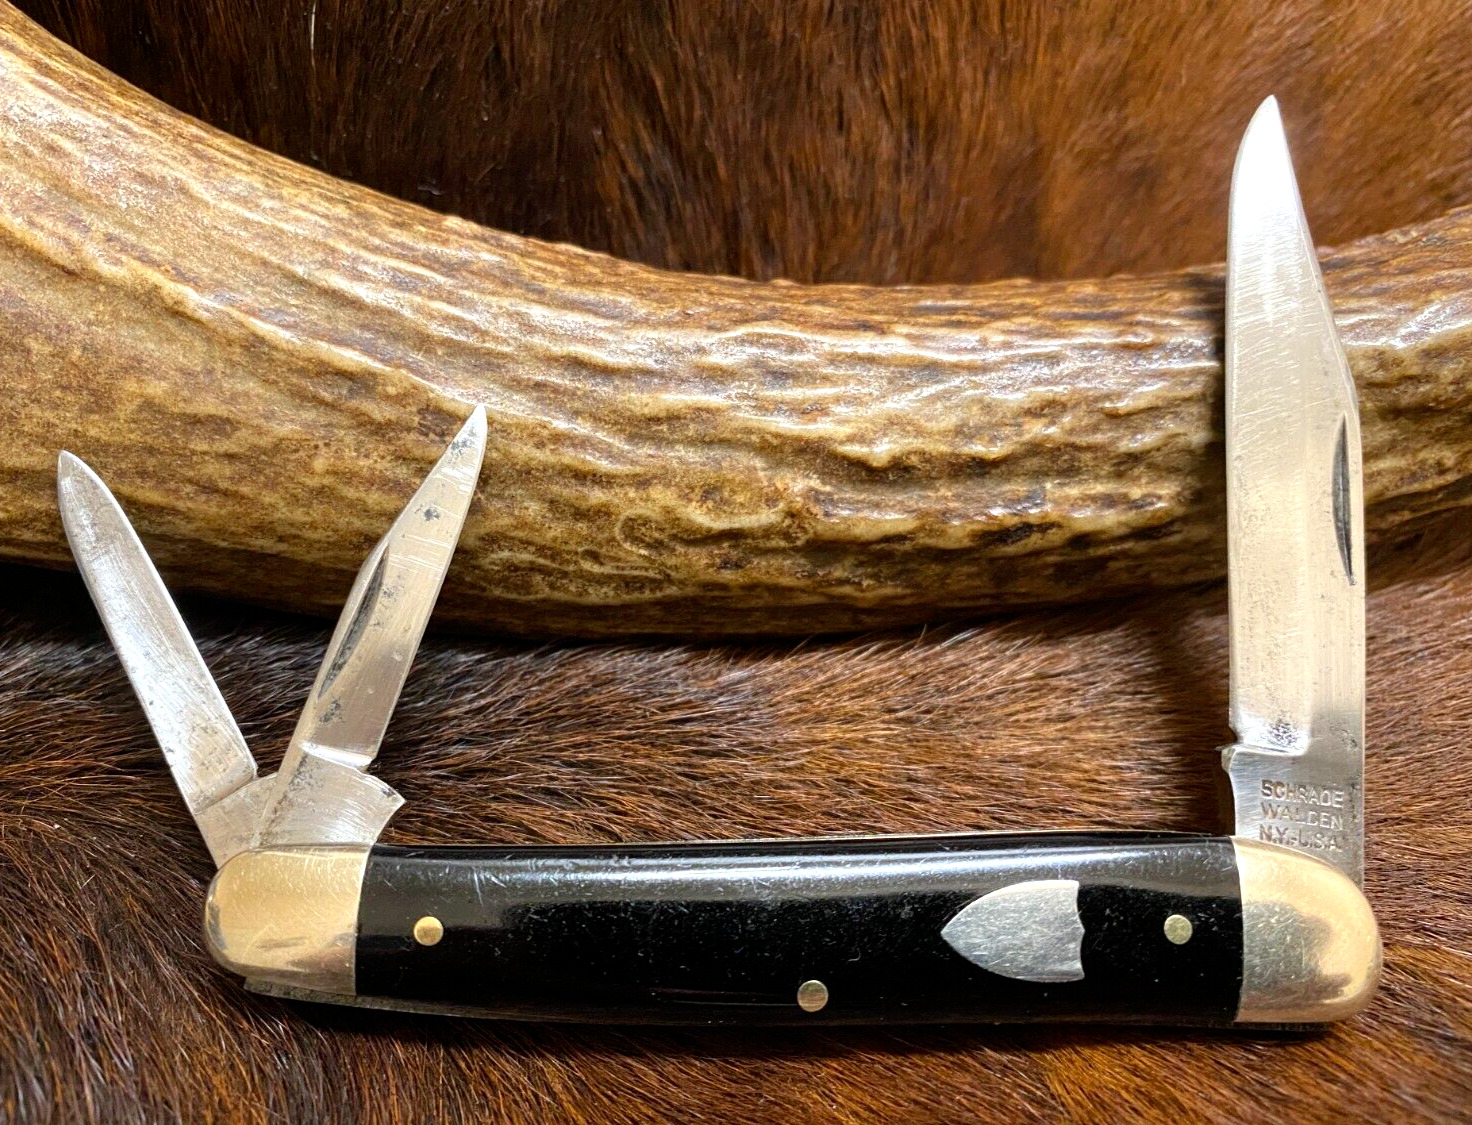 Schrade-Walden N.Y. USA. 836 Three Blade Serpentine Splitback Whittler Knife